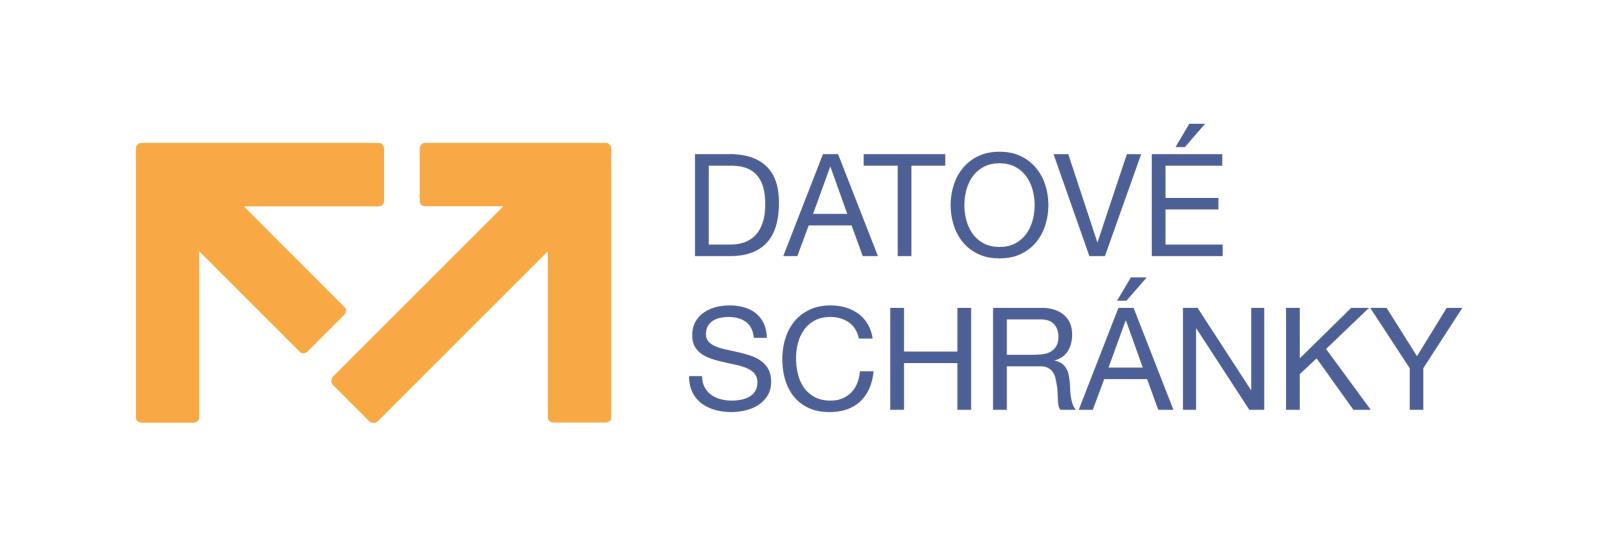 Datove_schranky_-_Logo-primarni02.jpg